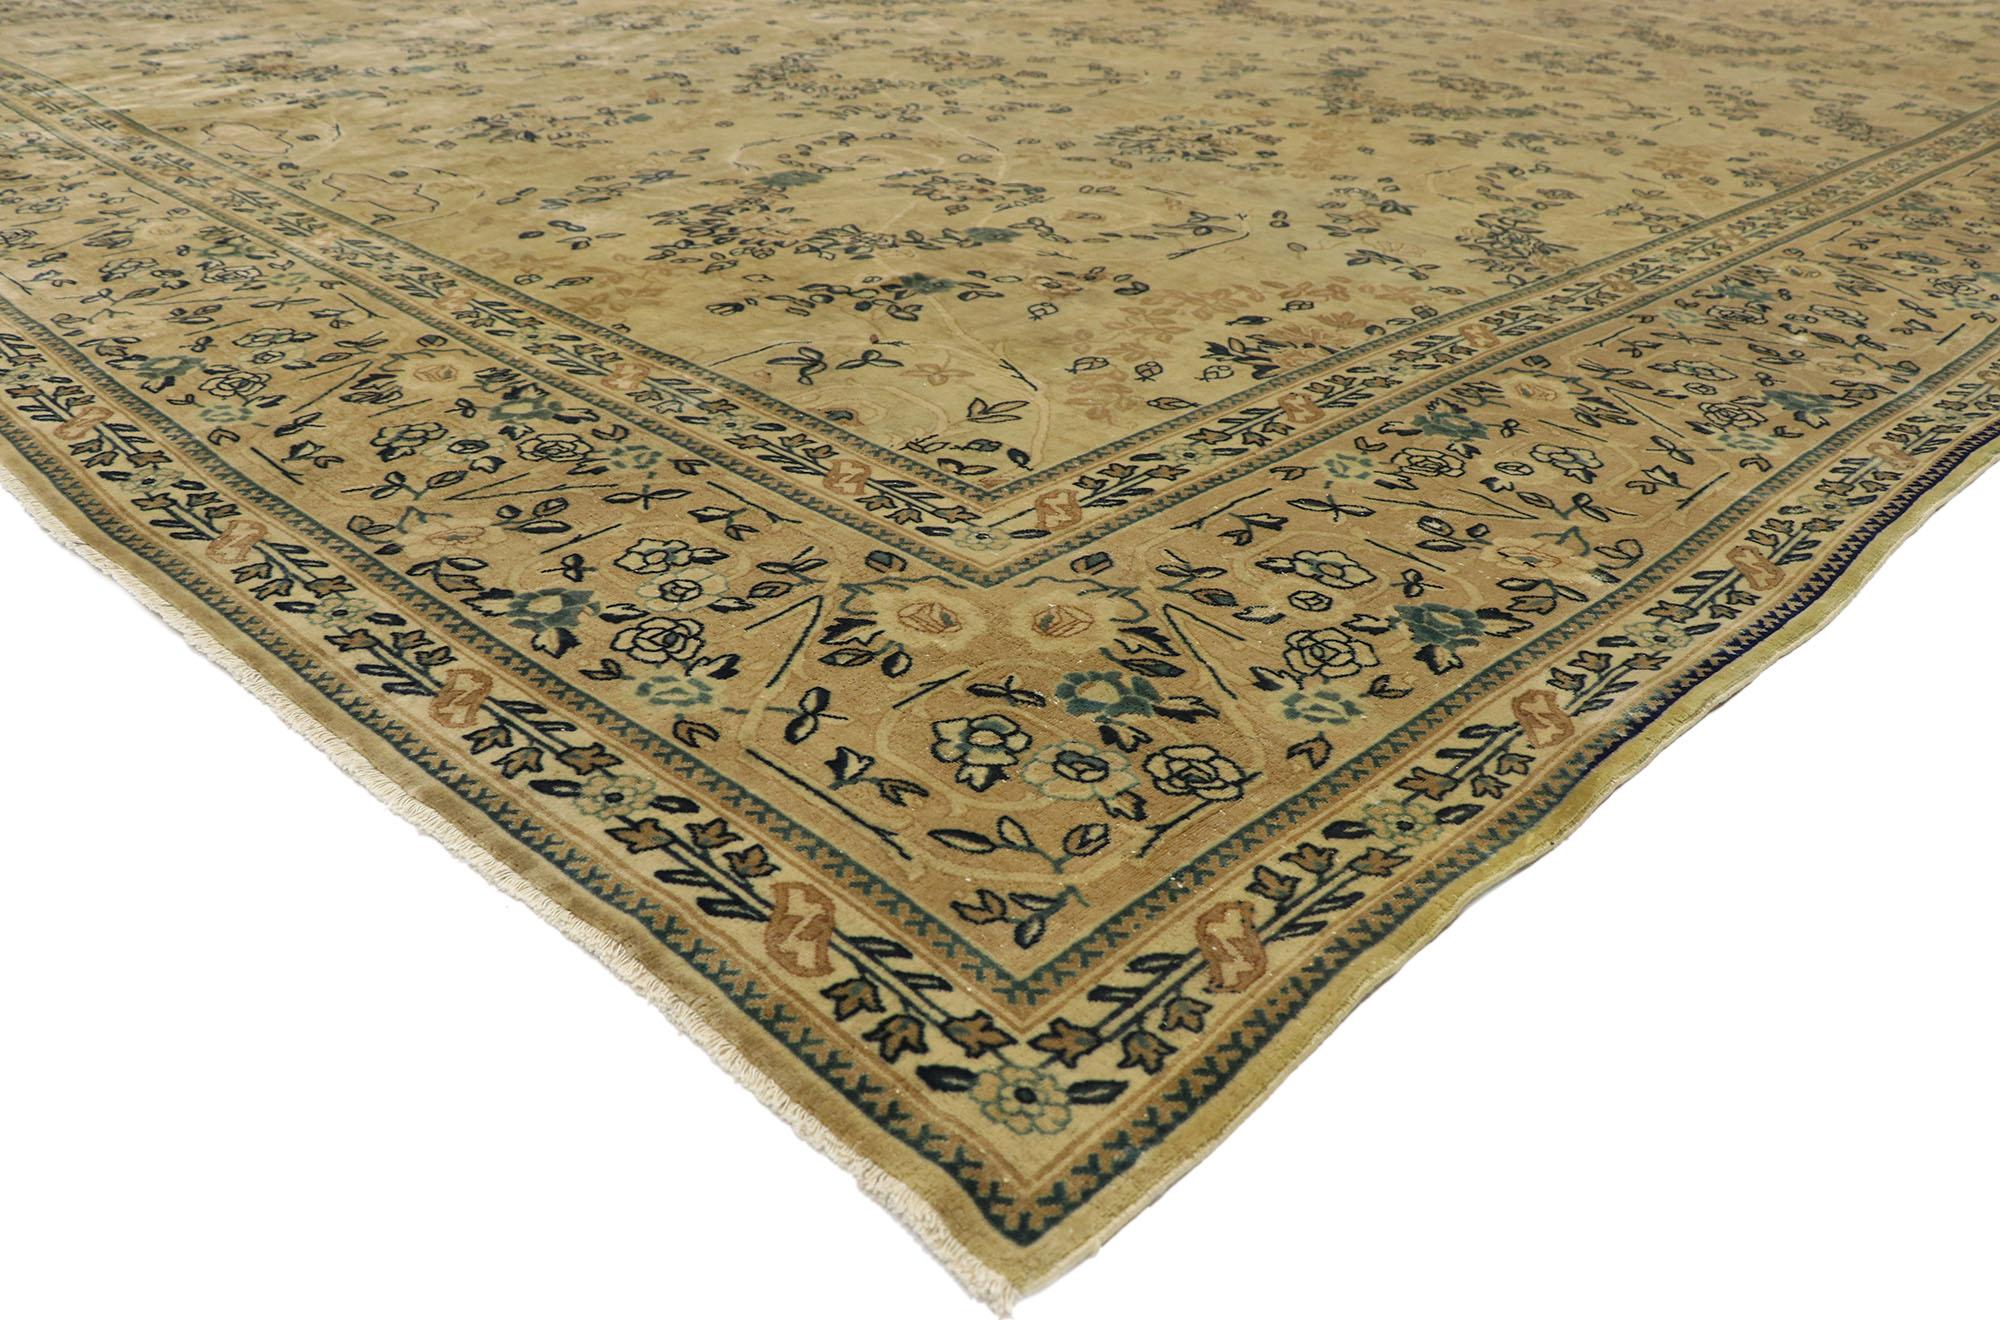 77431 Antik-getragener indischer Mogul-Teppich, 12'07 x 18'10. Indische Mogulteppiche aus dem späten 19. Jahrhundert wurden in den untergehenden Jahren des Mogulreichs hergestellt und weisen komplizierte, von persischer, indischer und europäischer